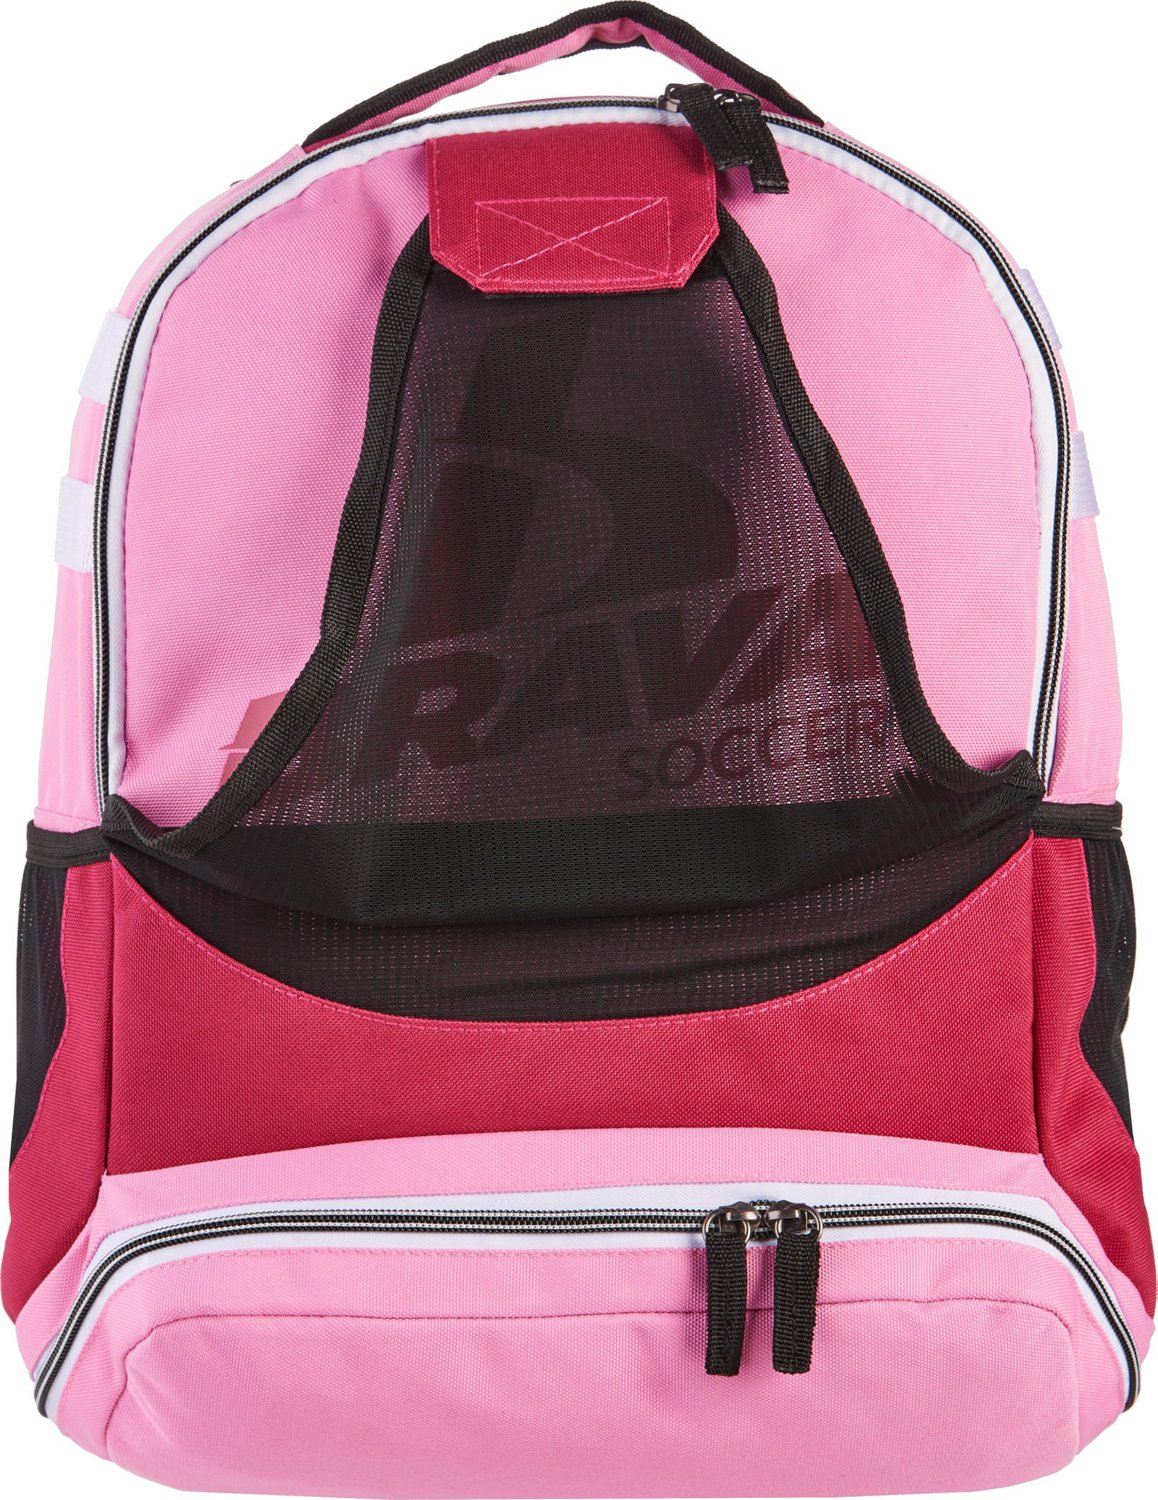 Brava Soccer Kids Soccer Backpack